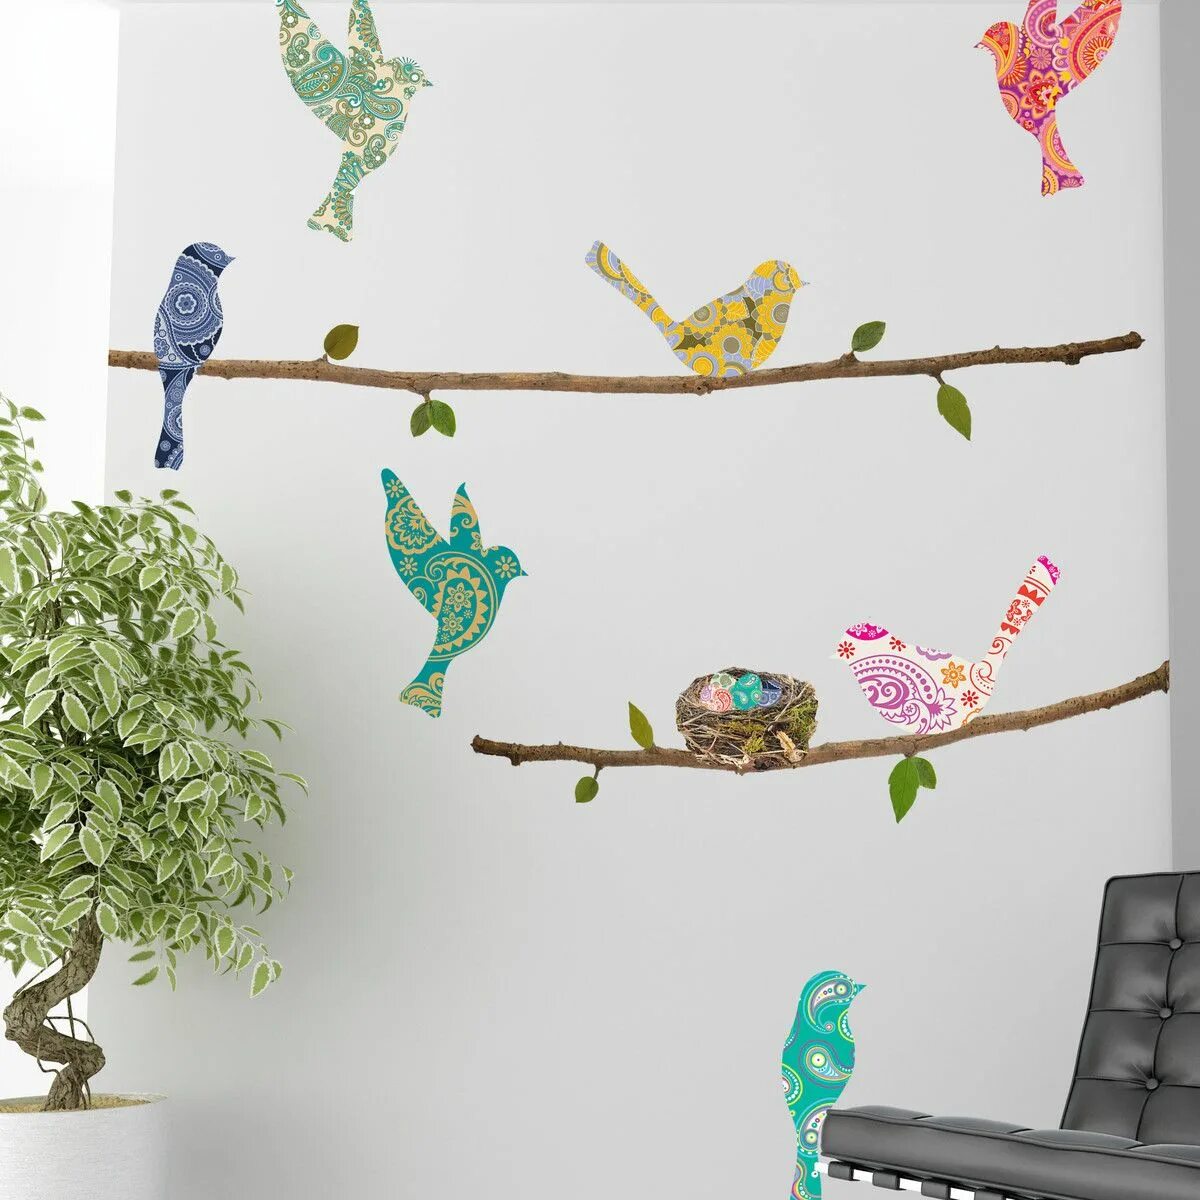 Room bird. Украшения для стены. Птички на стене в интерьере. Украшение на стену птицы. Настенные украшения для интерьера.